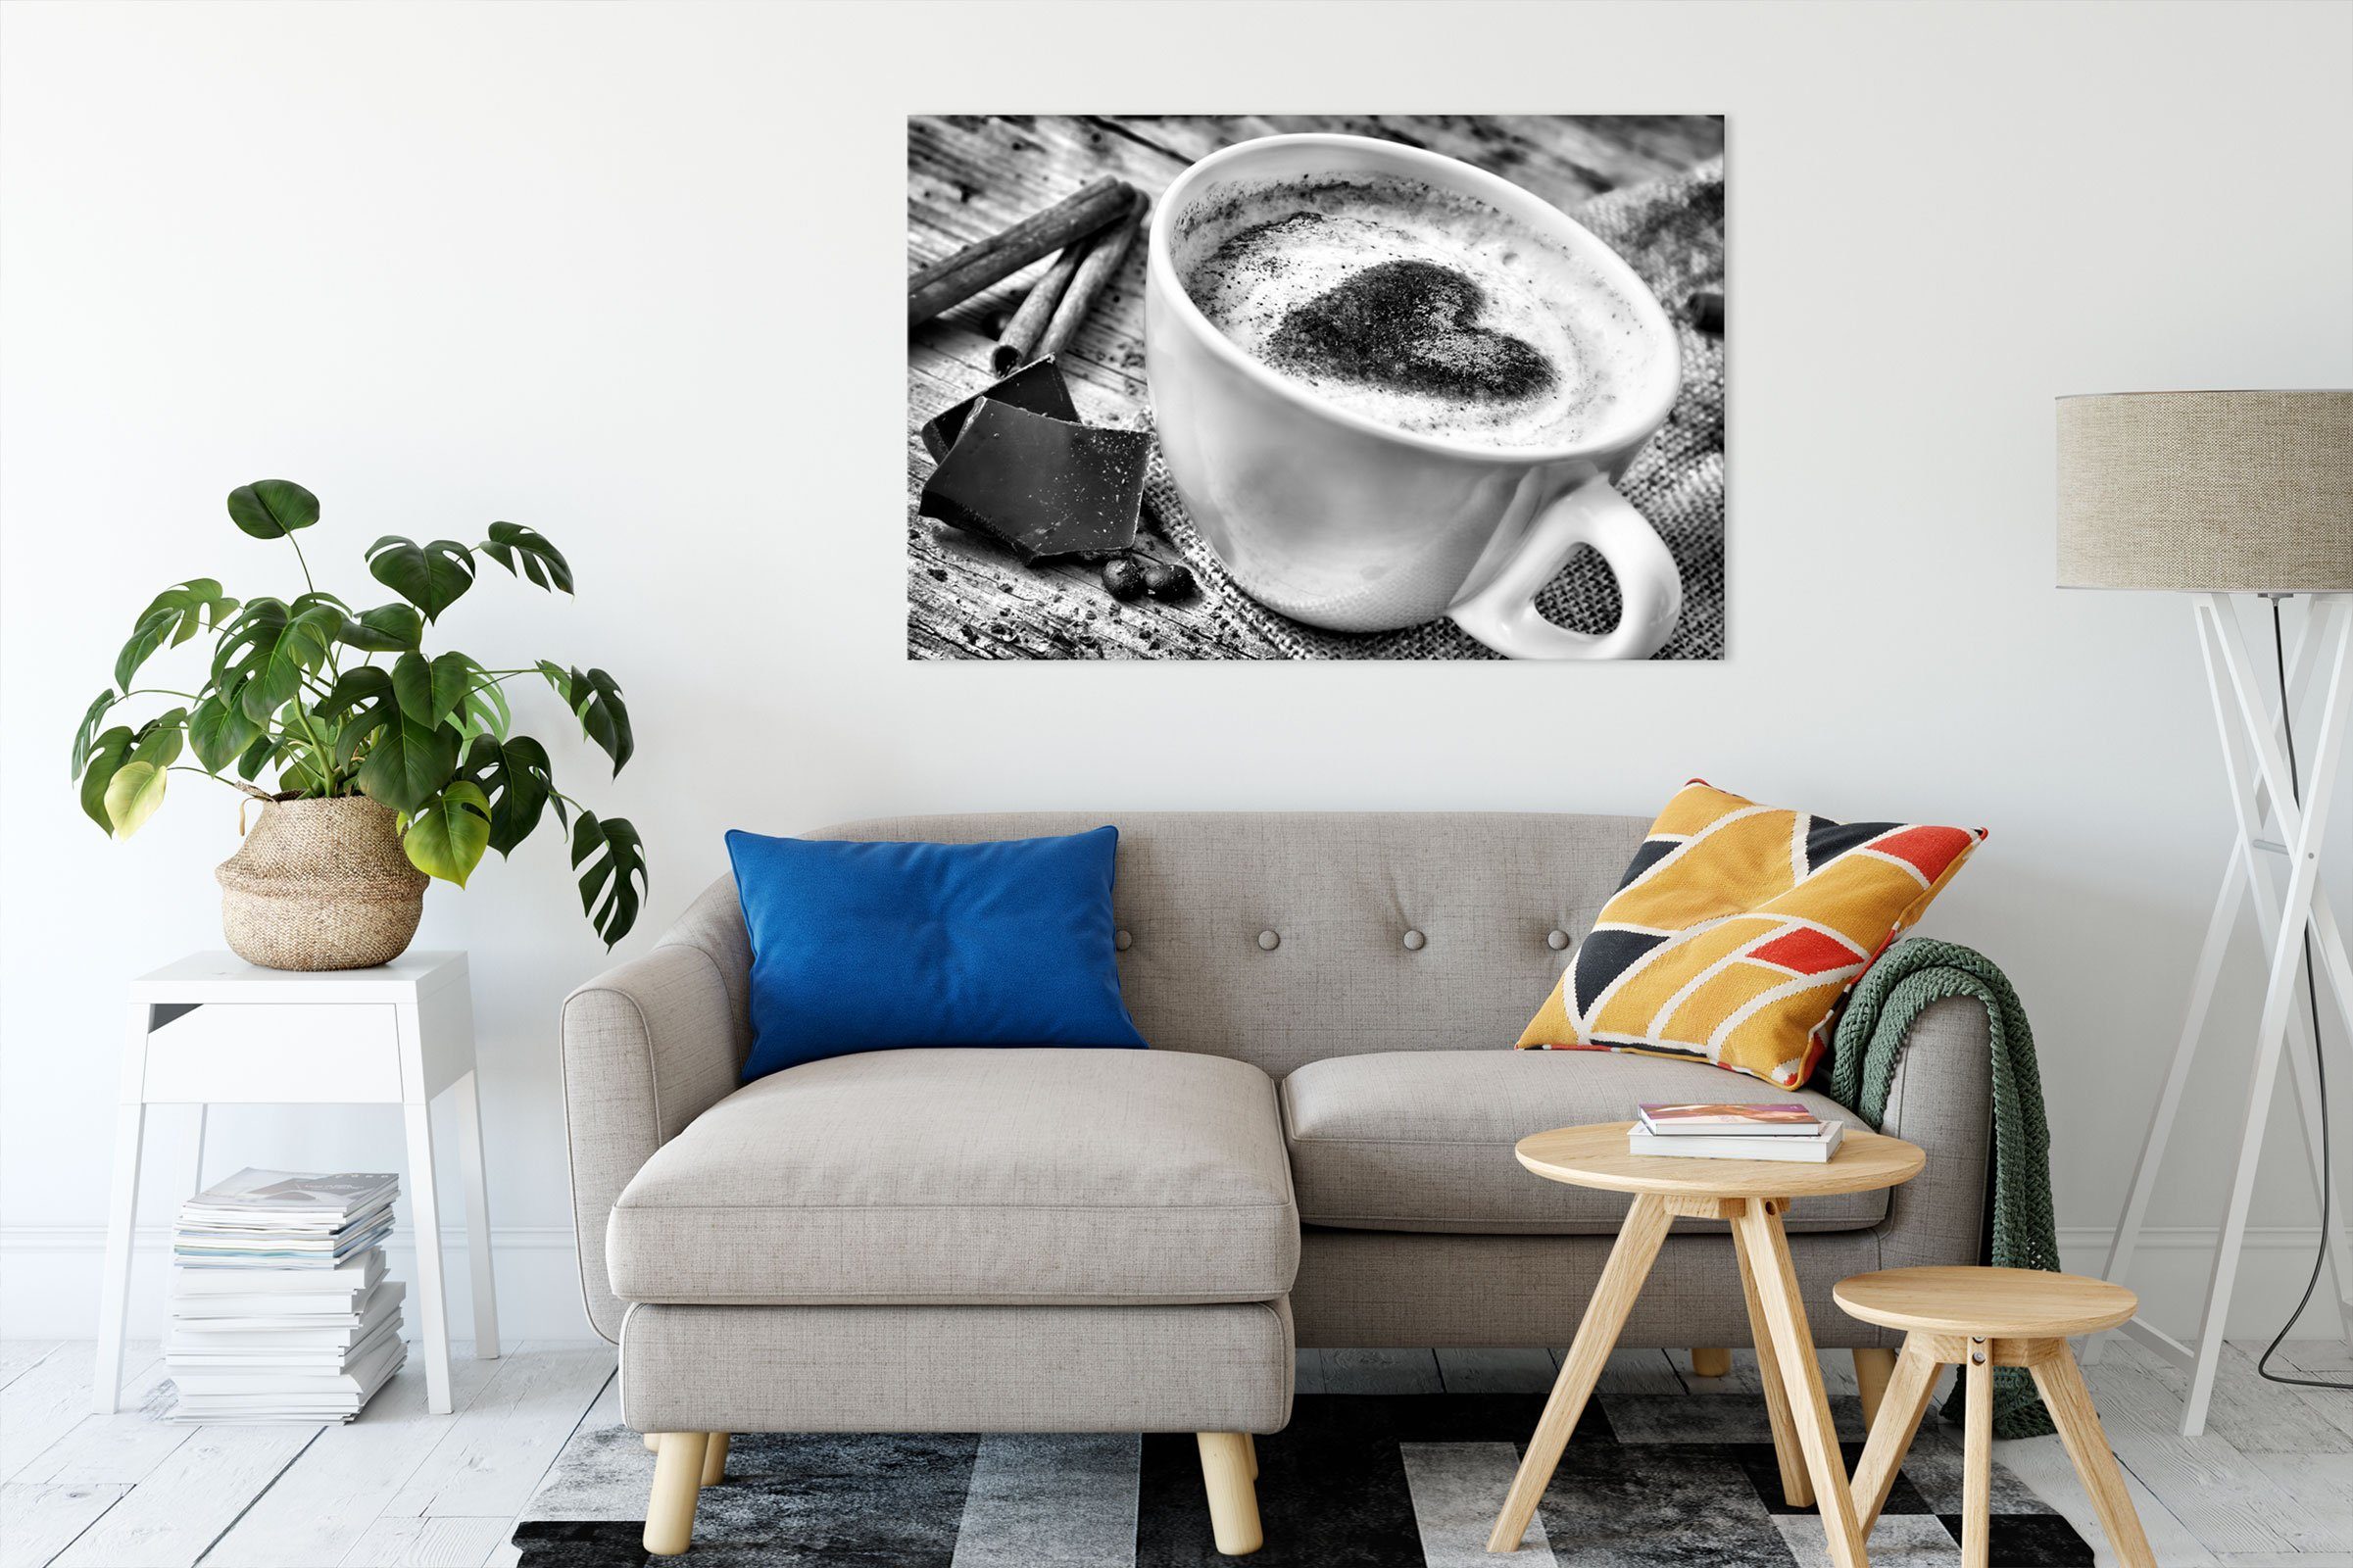 Zackenaufhänger bespannt, Leinwandbild Kaffe Kaffe inkl. Kaffeebohnen Kaffeebohnen, Leinwandbild Pixxprint fertig (1 St),